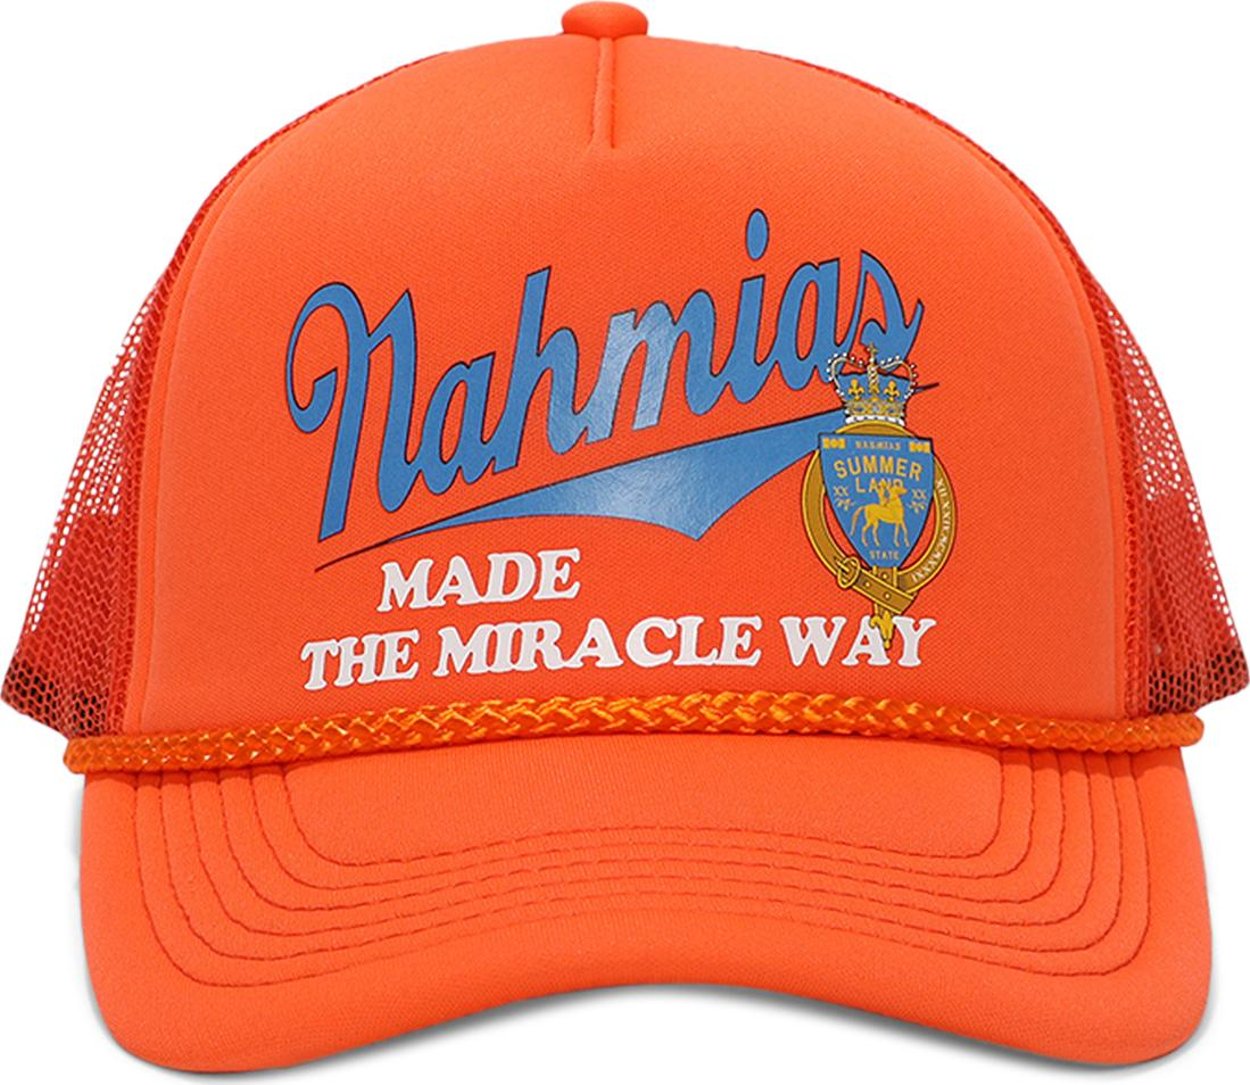 Buy Nahmias Miller Way Foam Trucker Hat 'Orange/Blue' - SS23 TR1 G76